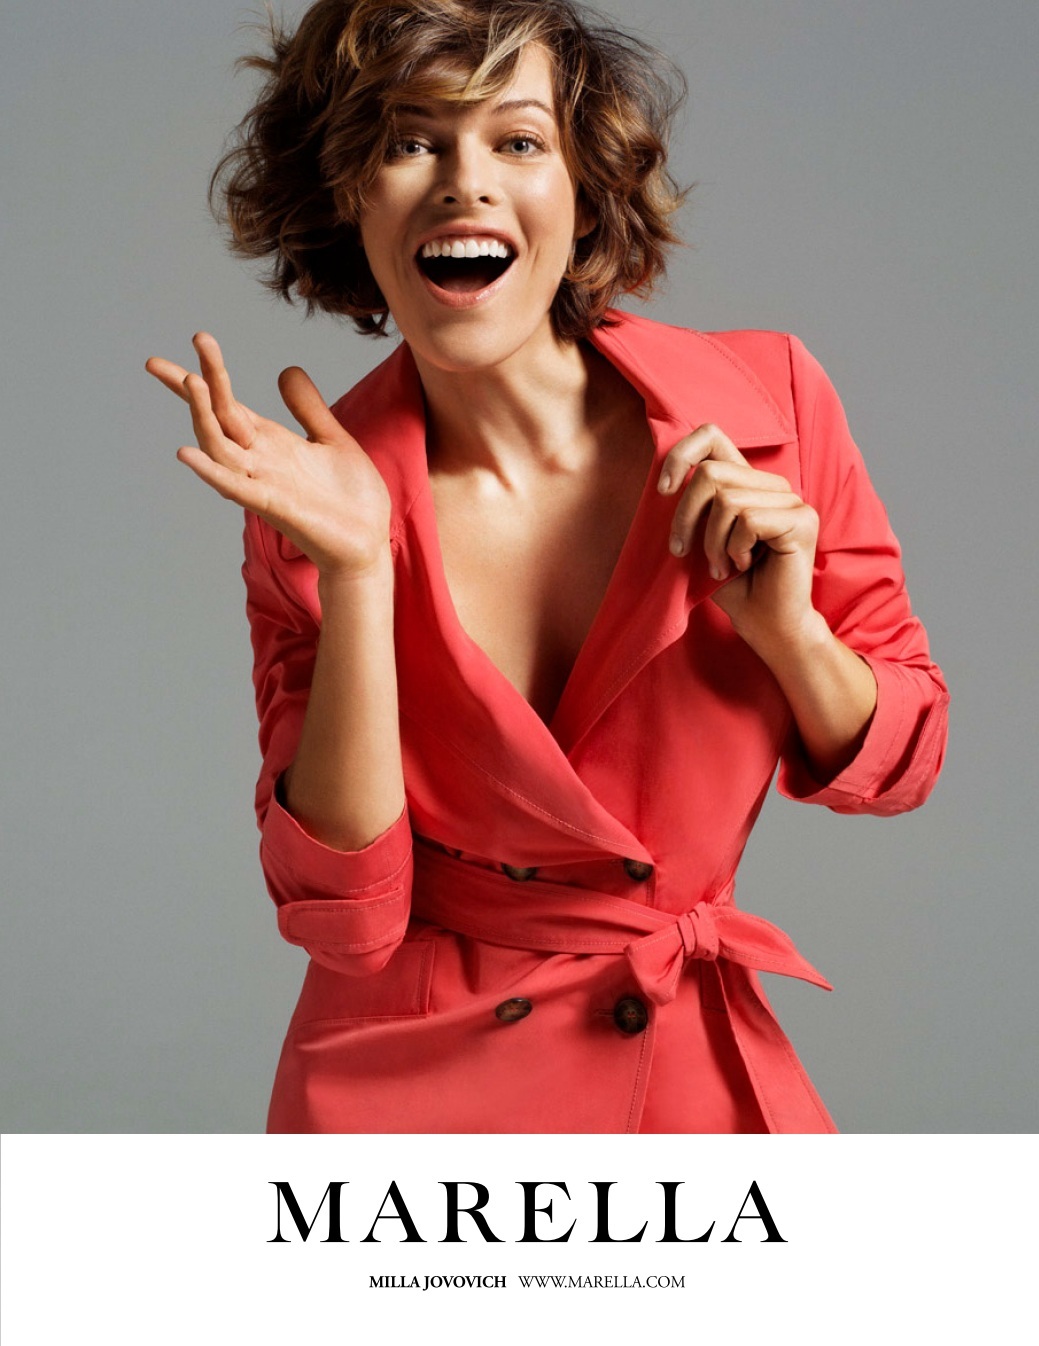 Милла Йовович в рекламной кампании  Marella